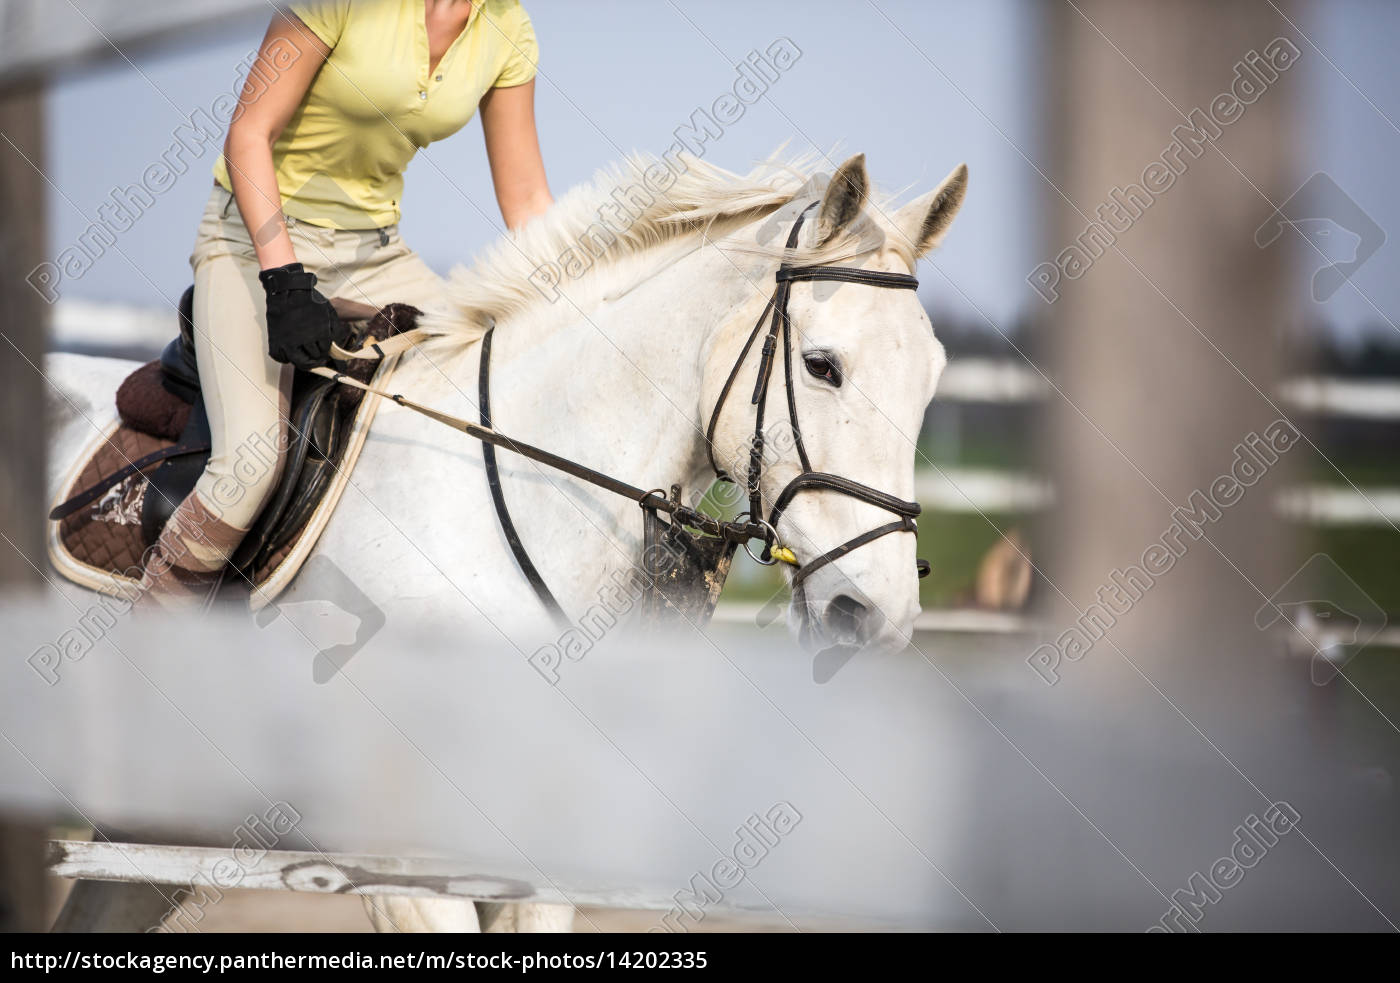 Cavalo De Baía Com Garota De Jóquei Pulando Sobre Um Obstáculo. Um